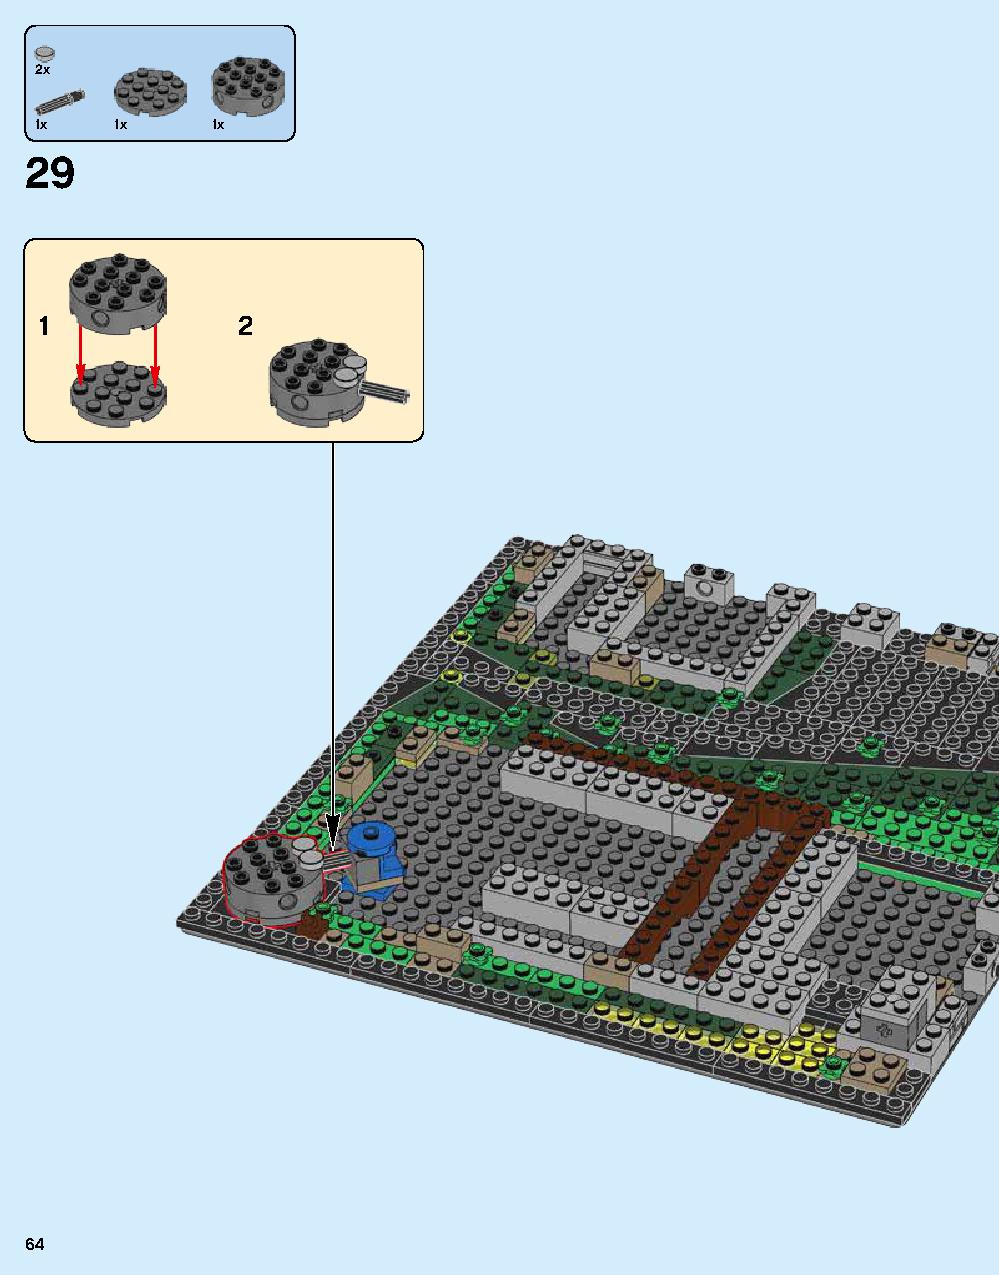 닌자고® 시티 70620 레고 세트 제품정보 레고 조립설명서 64 page